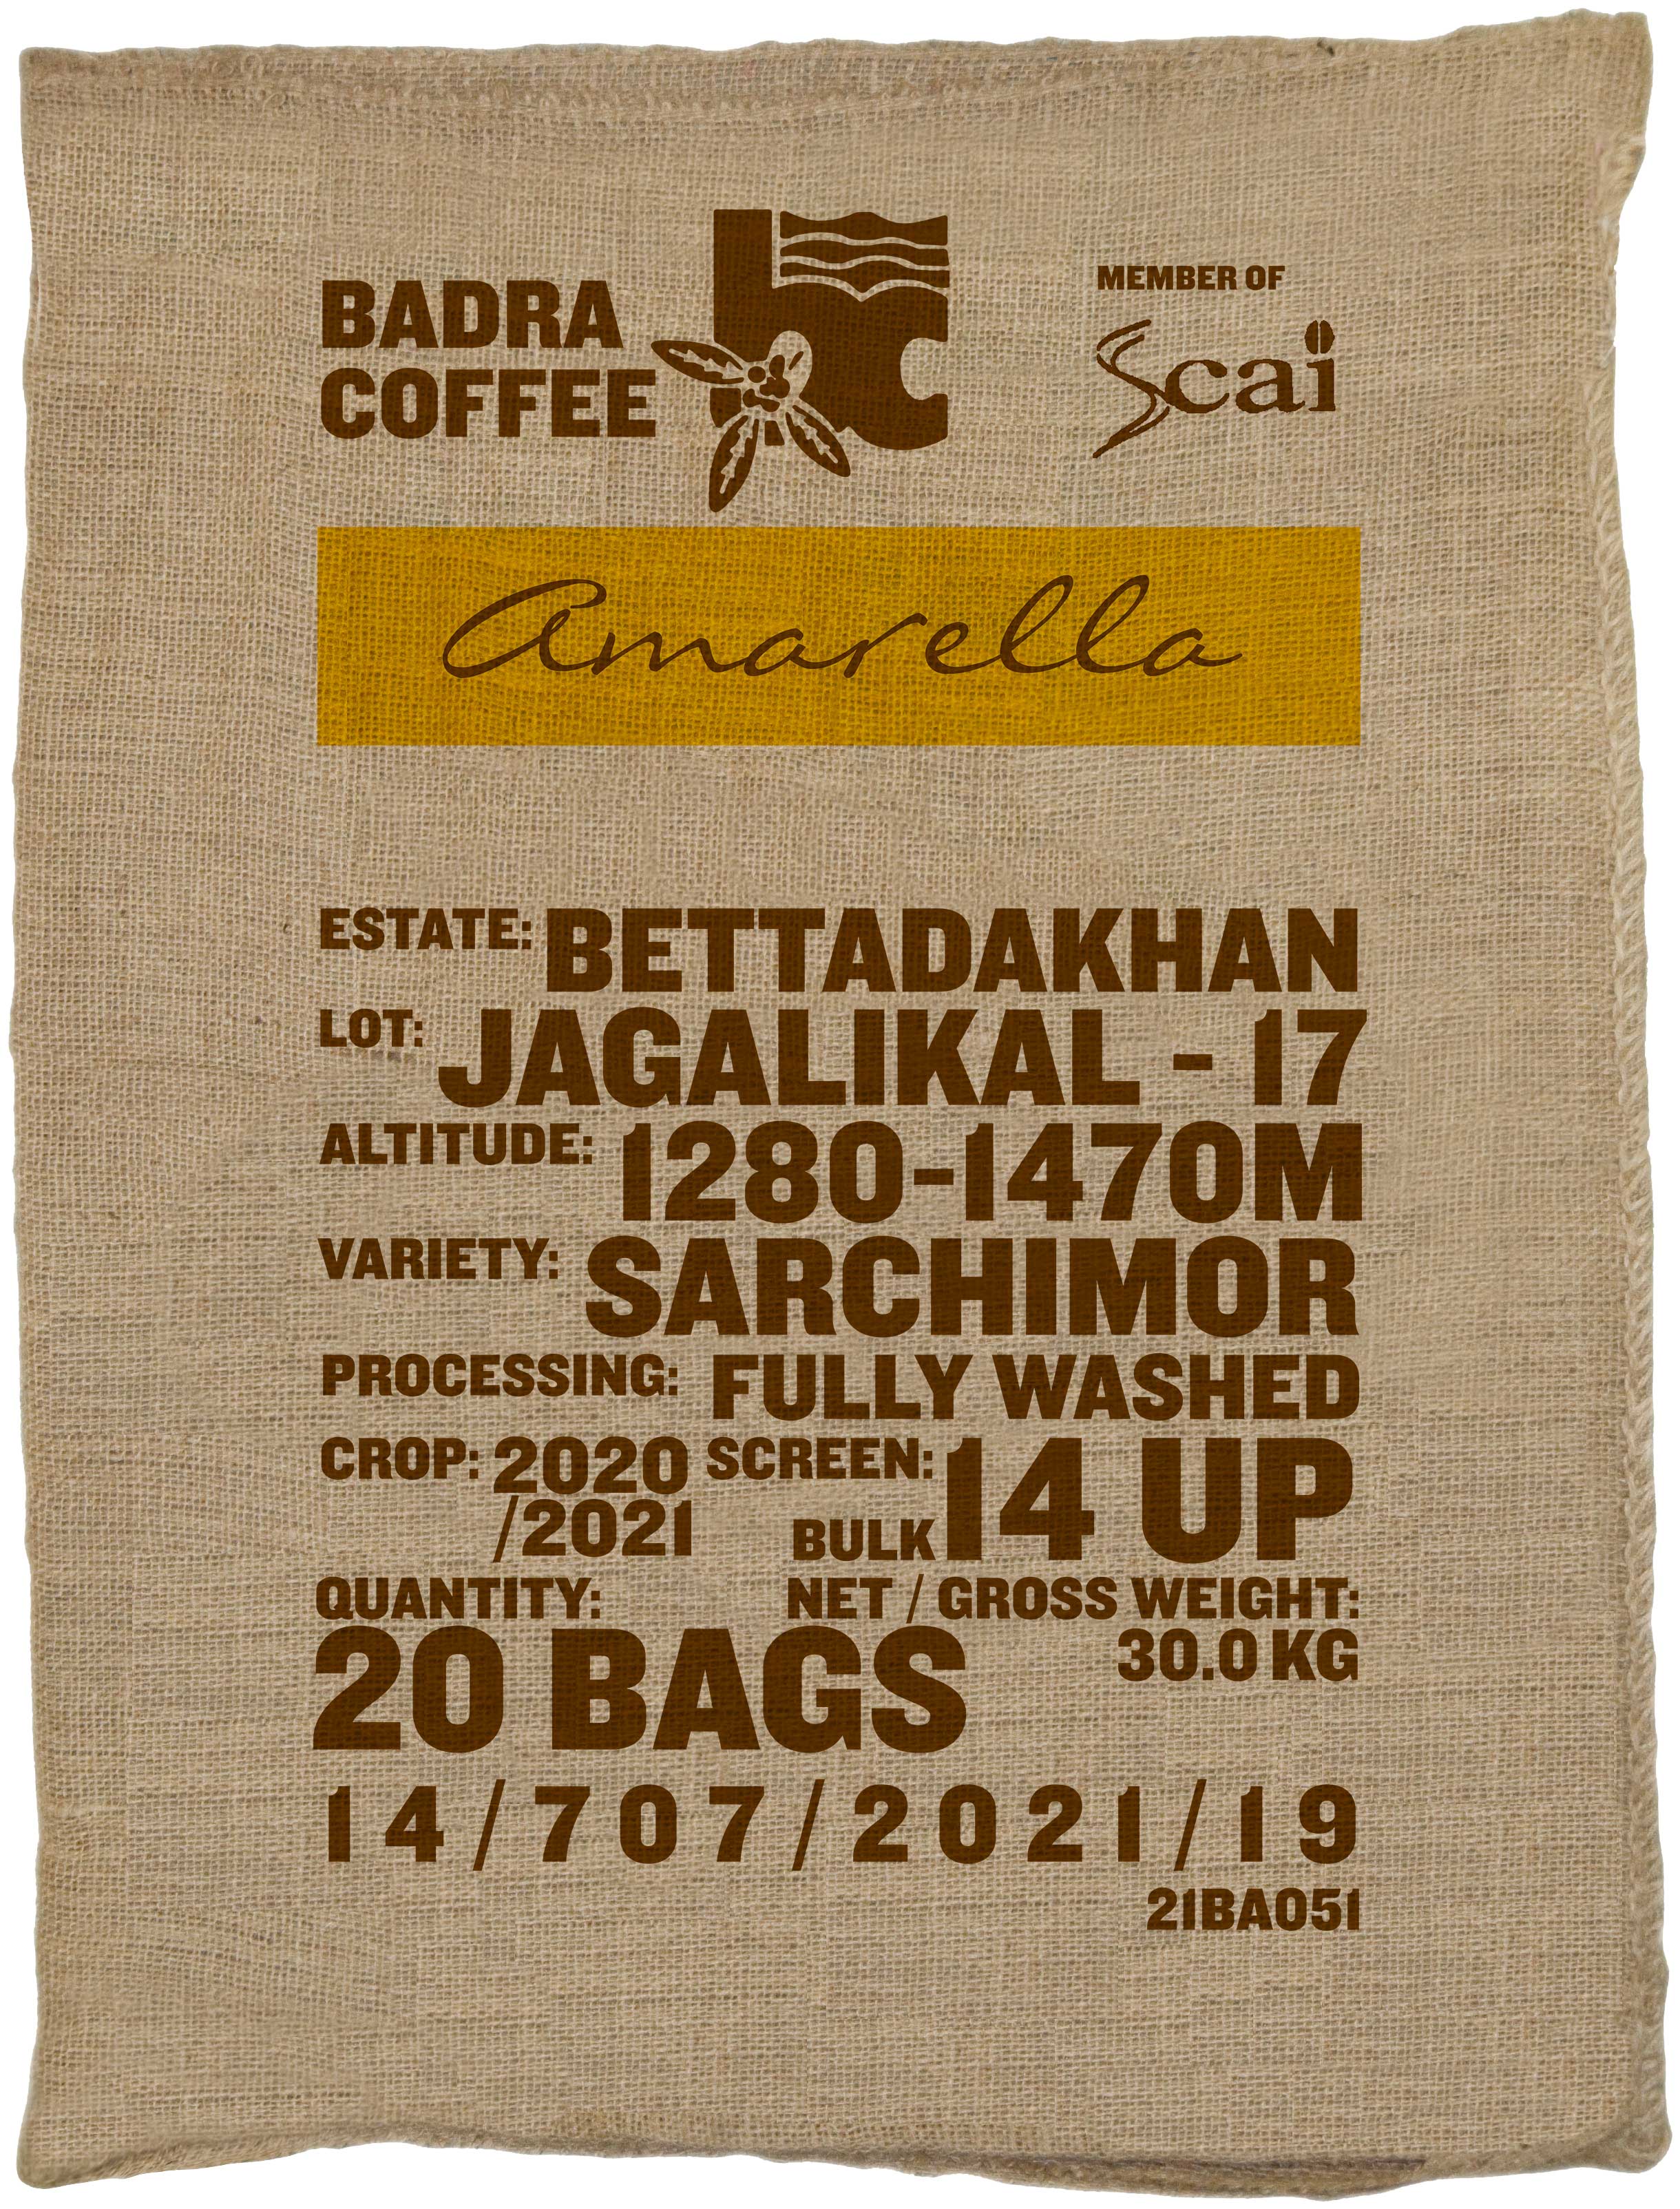 Jagalikal - 17, Sarchimor